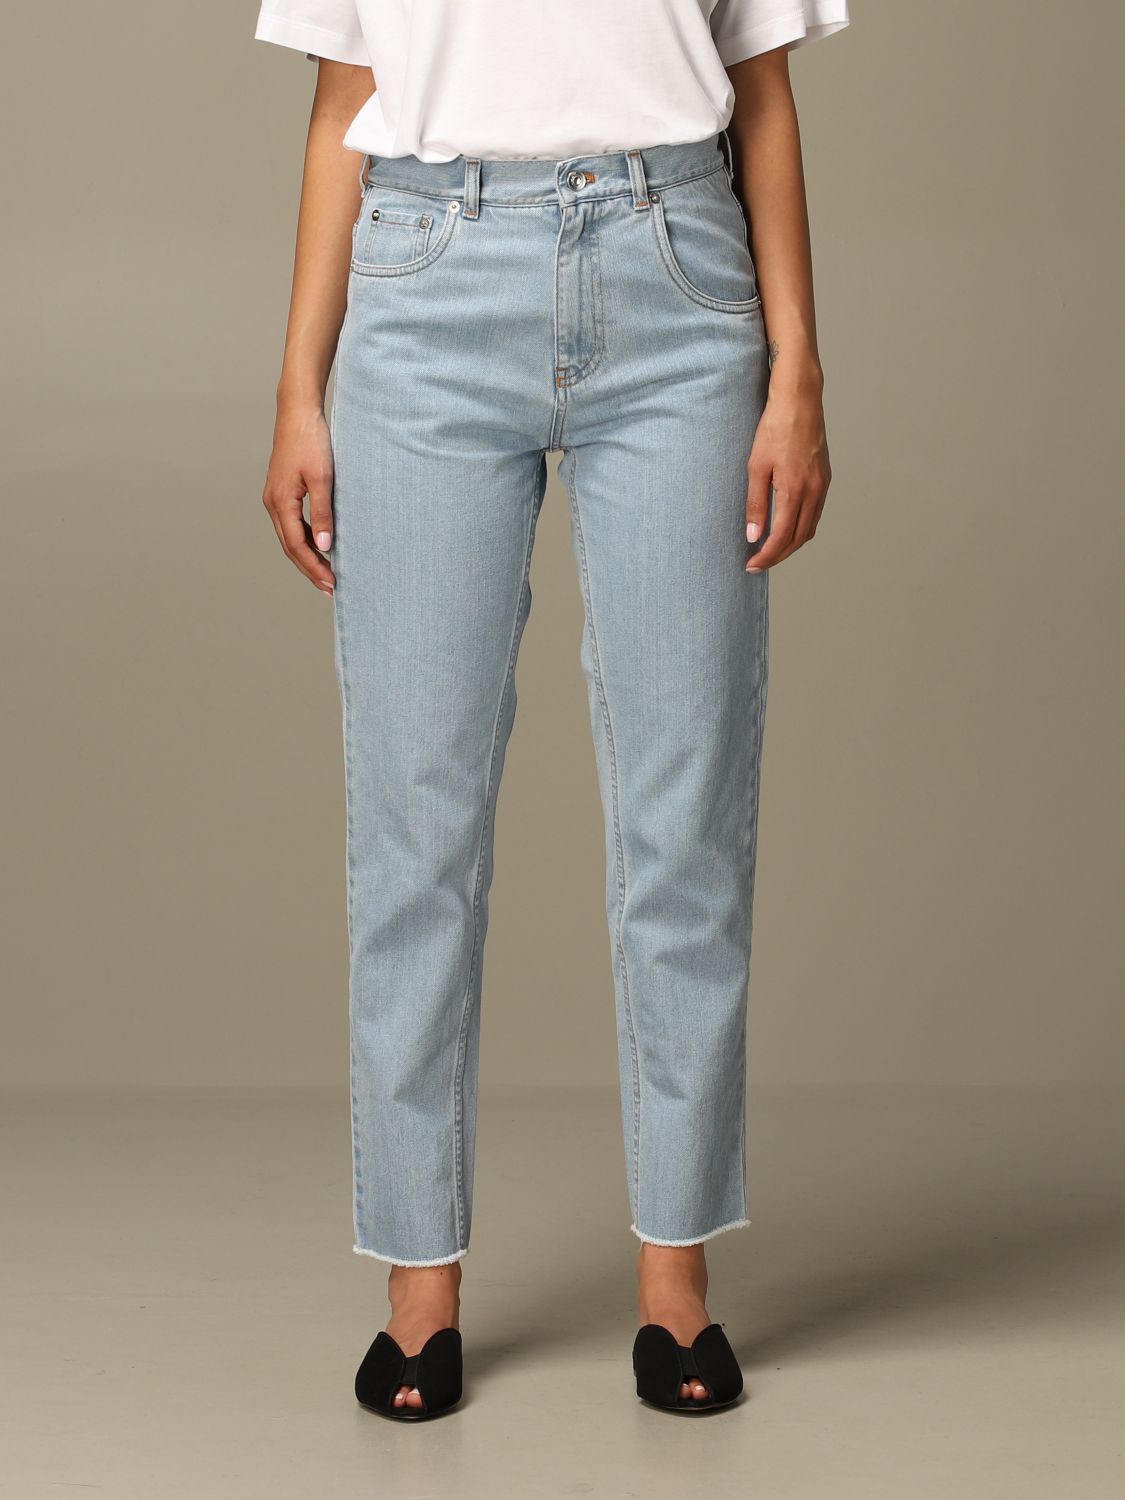 N° 21 Outlet: N ° 21 jeans in 5-pocket denim - Stone Washed | N 